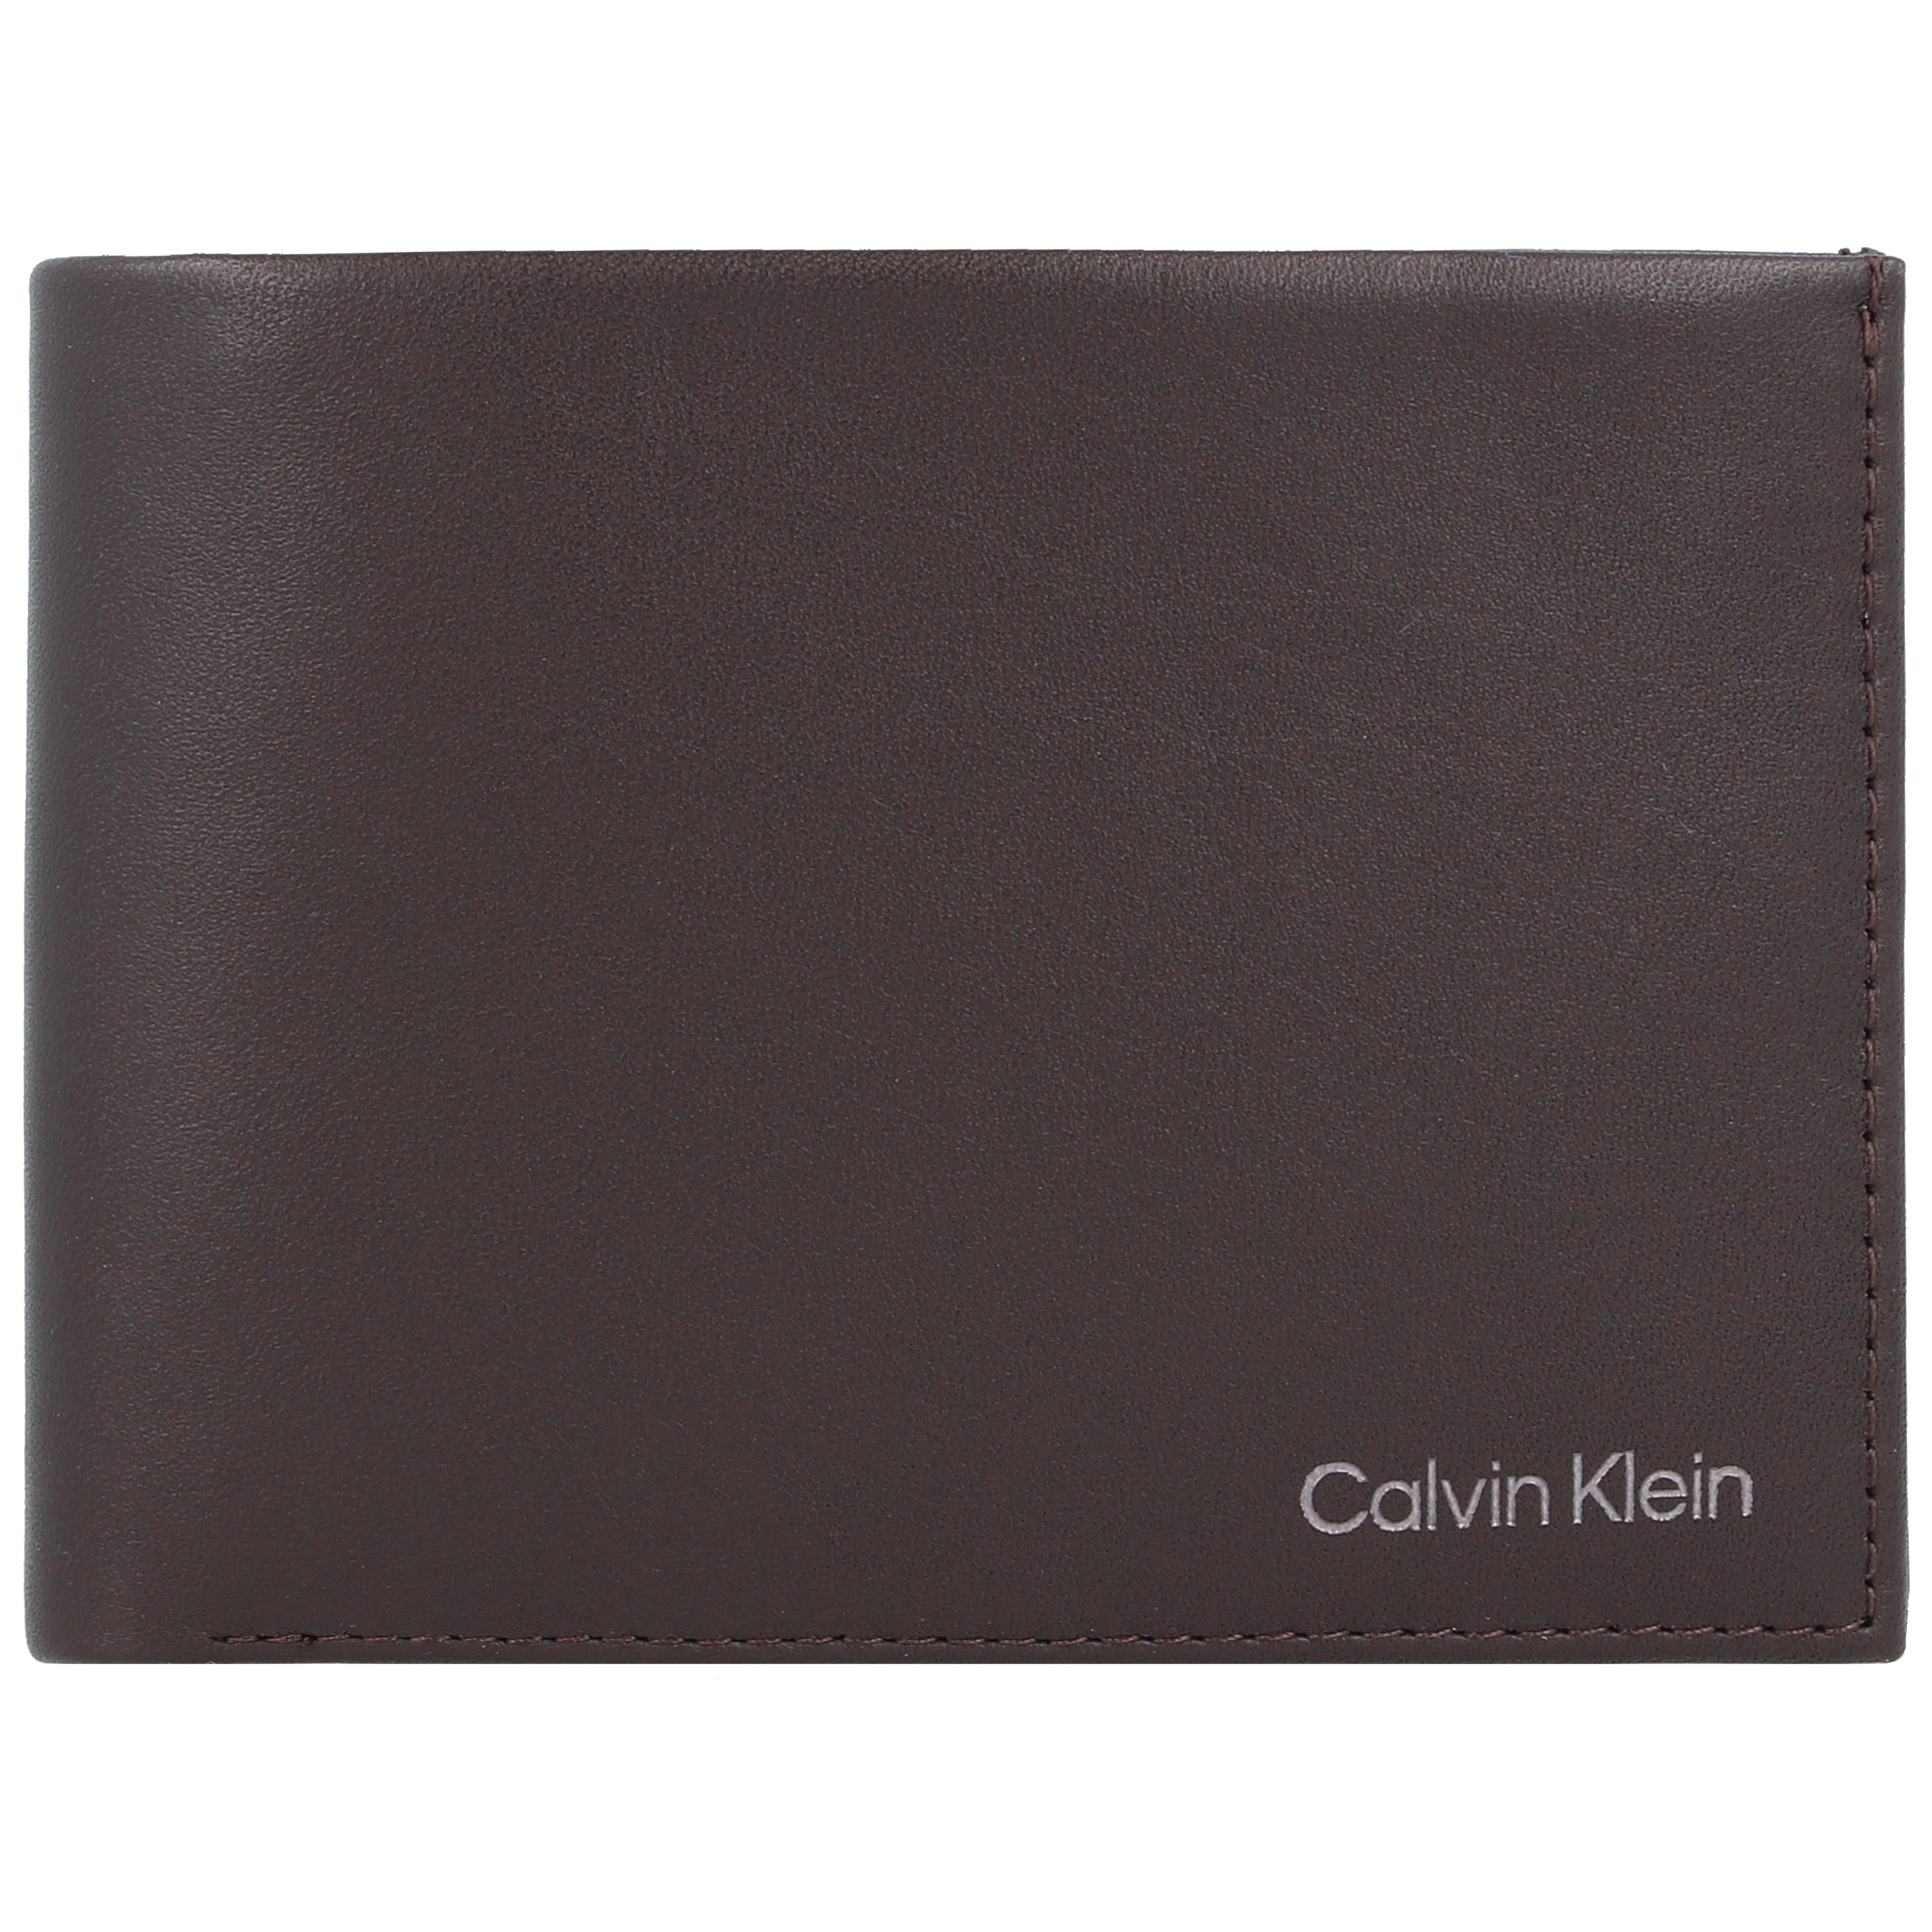 Accessori Accessori Calvin Klein Portamonete in Marrone Scuro 